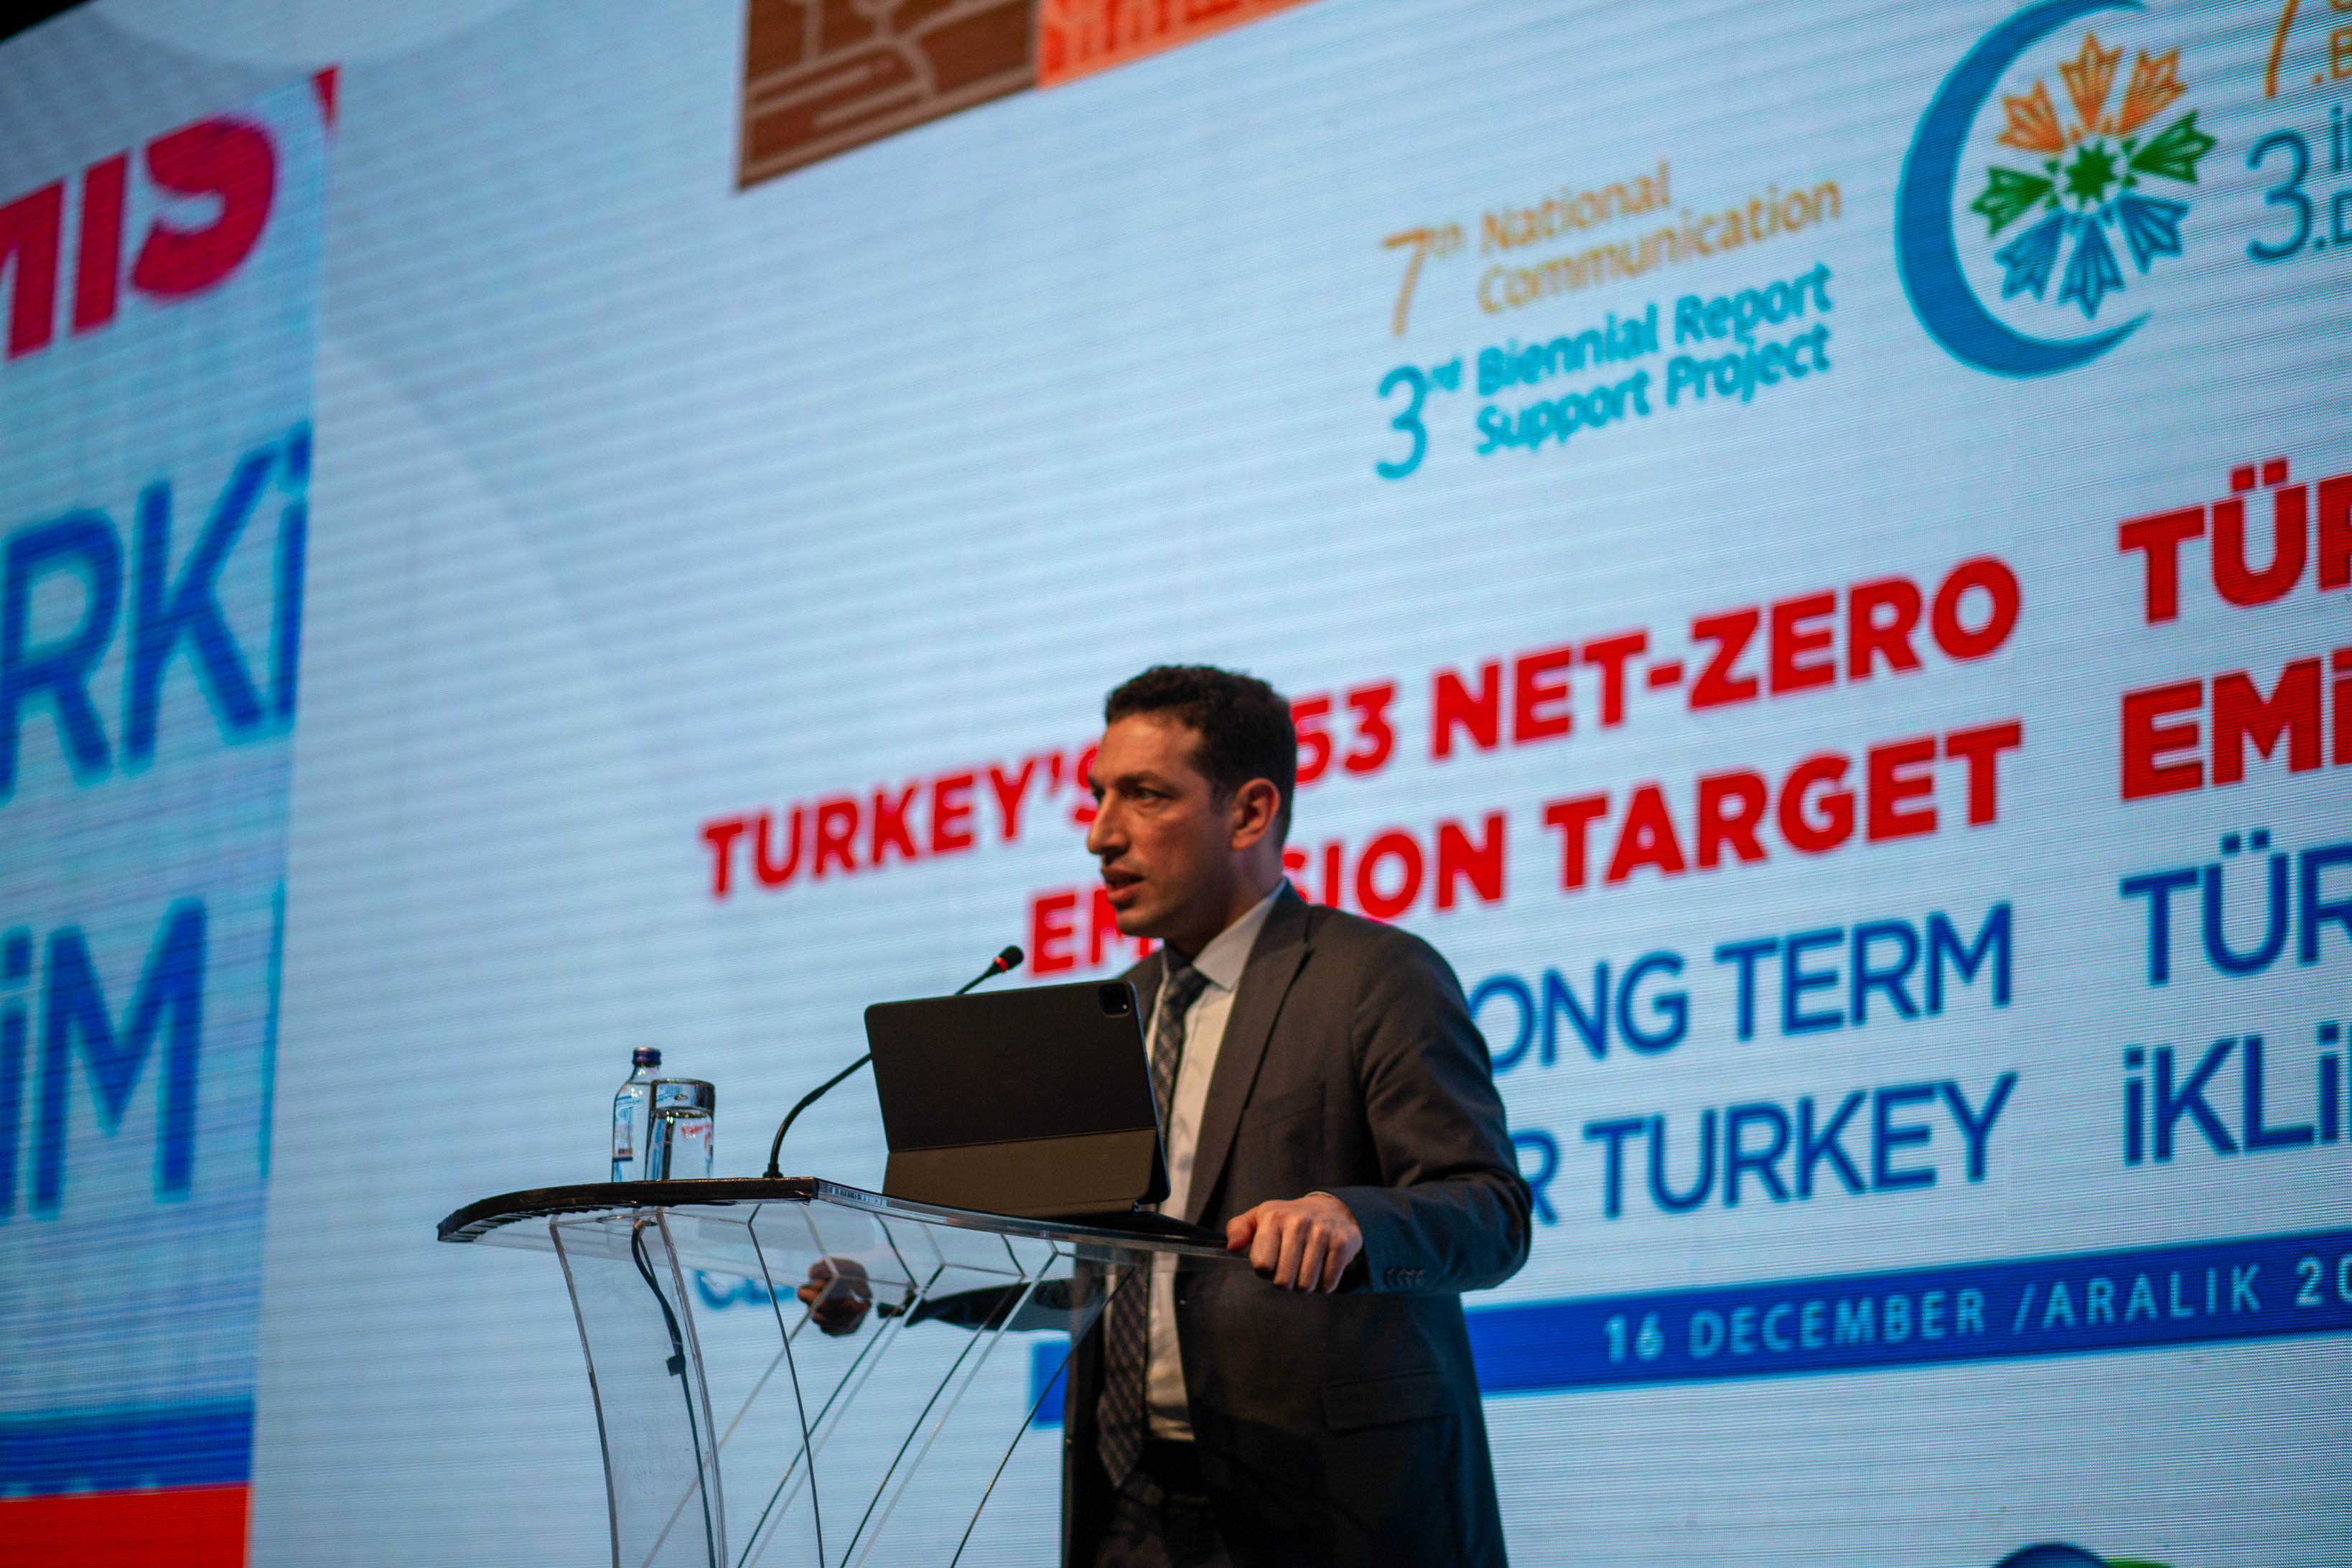 Türkiye’nin 2053 yılı net sıfır emisyon rotası hazırlanıyor